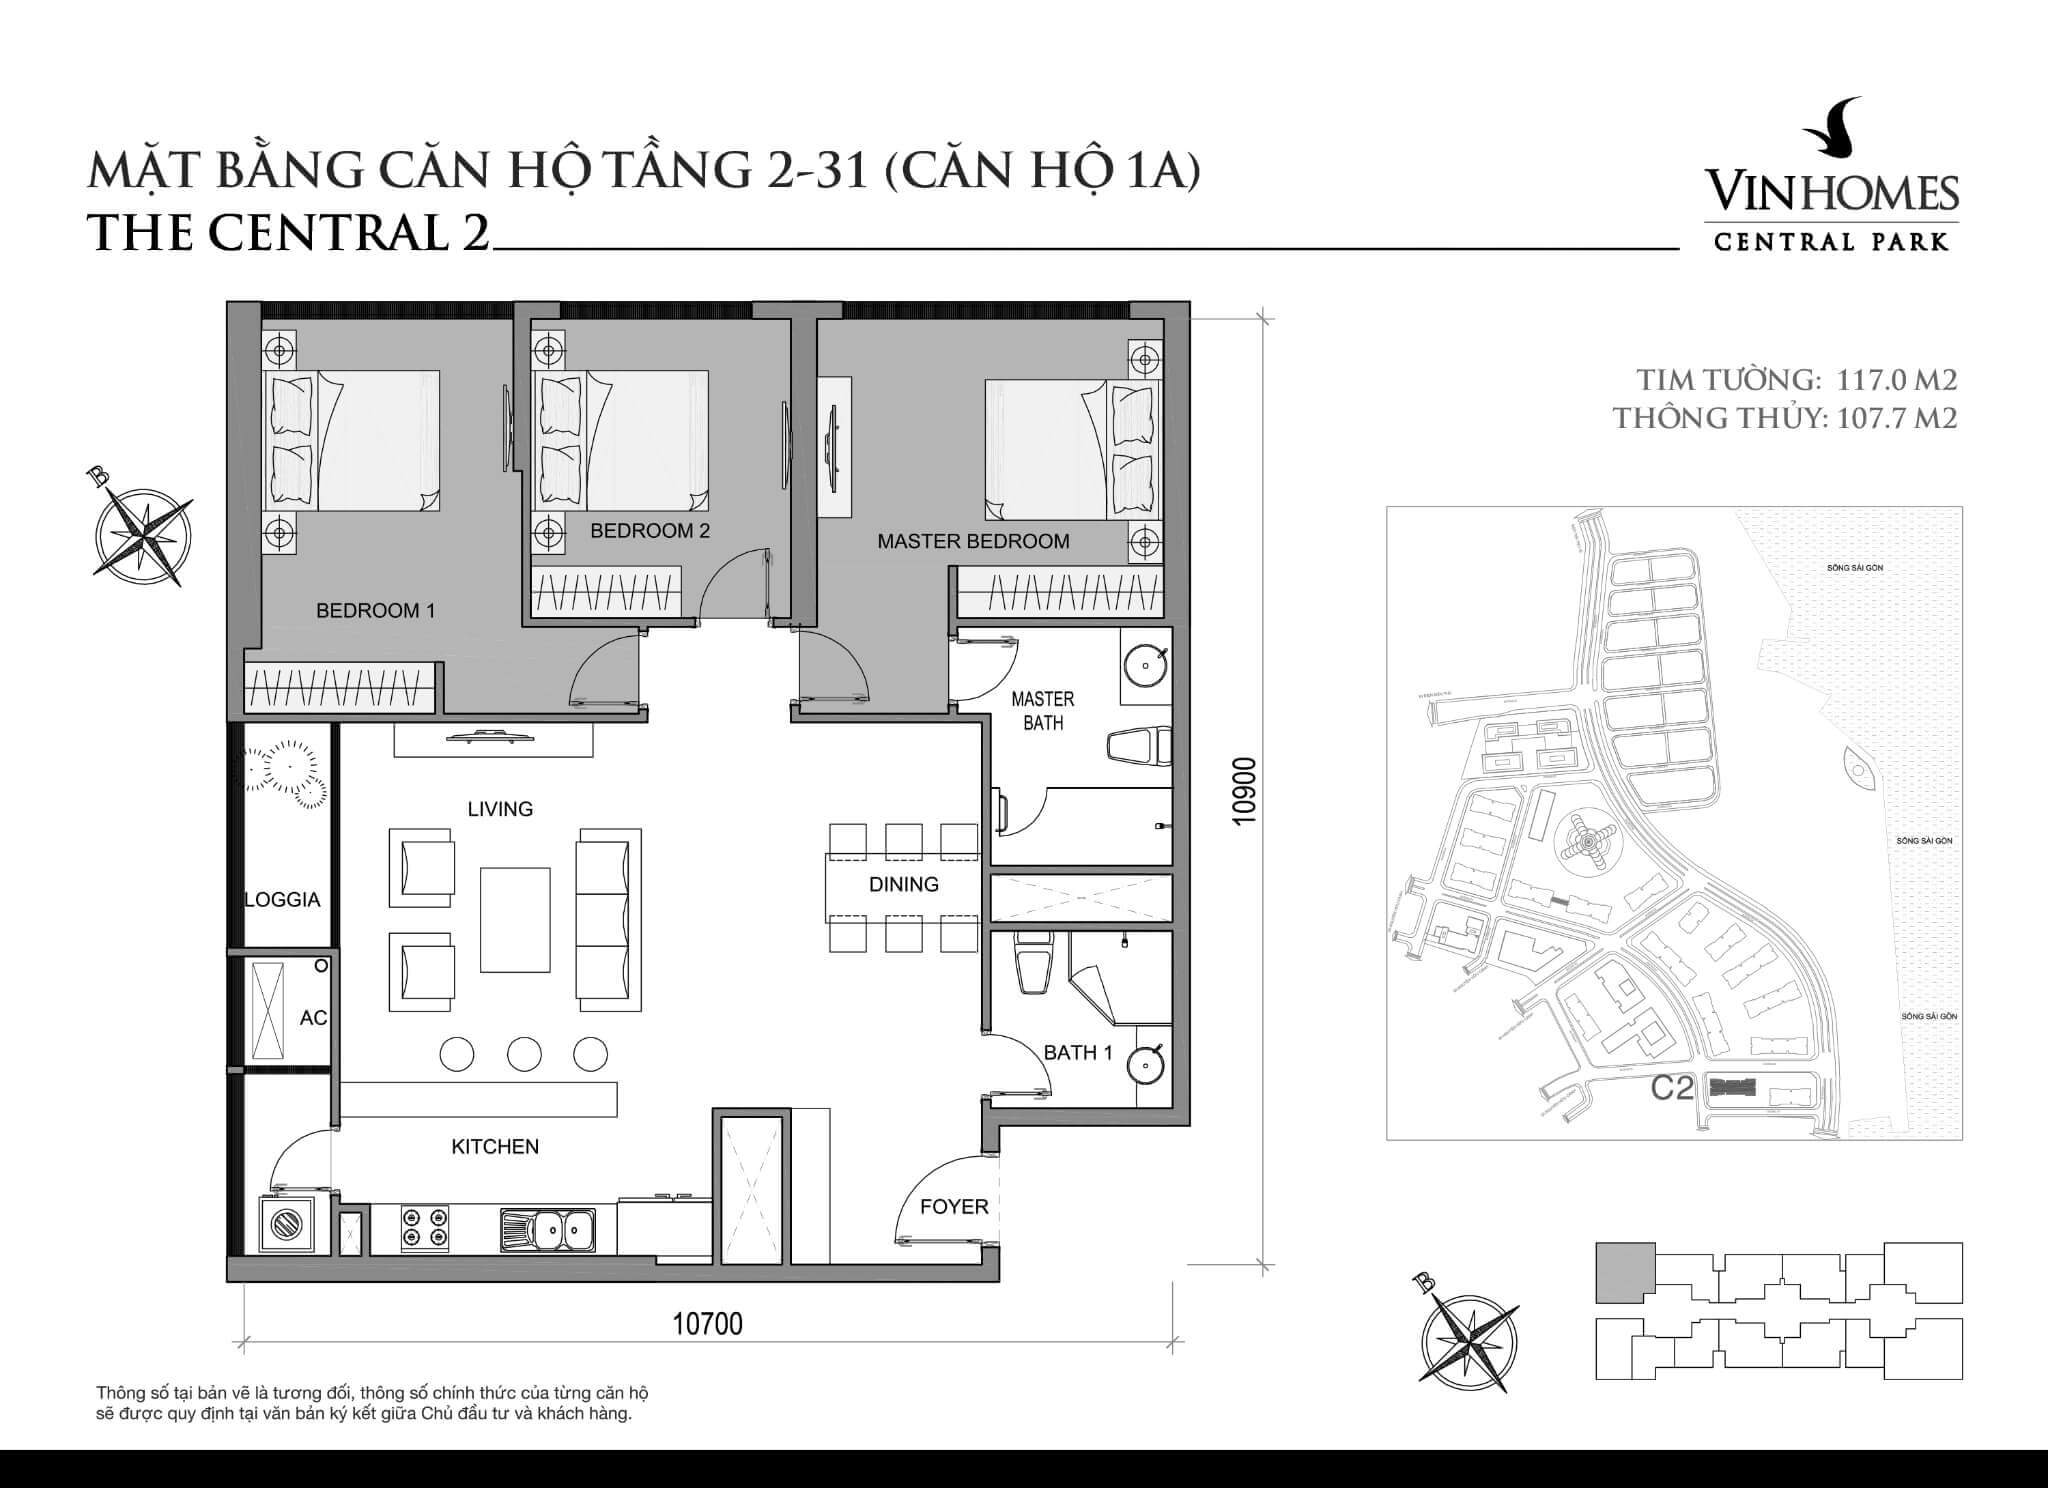 layout căn hộ số 1A tầng 2-31 Central 2